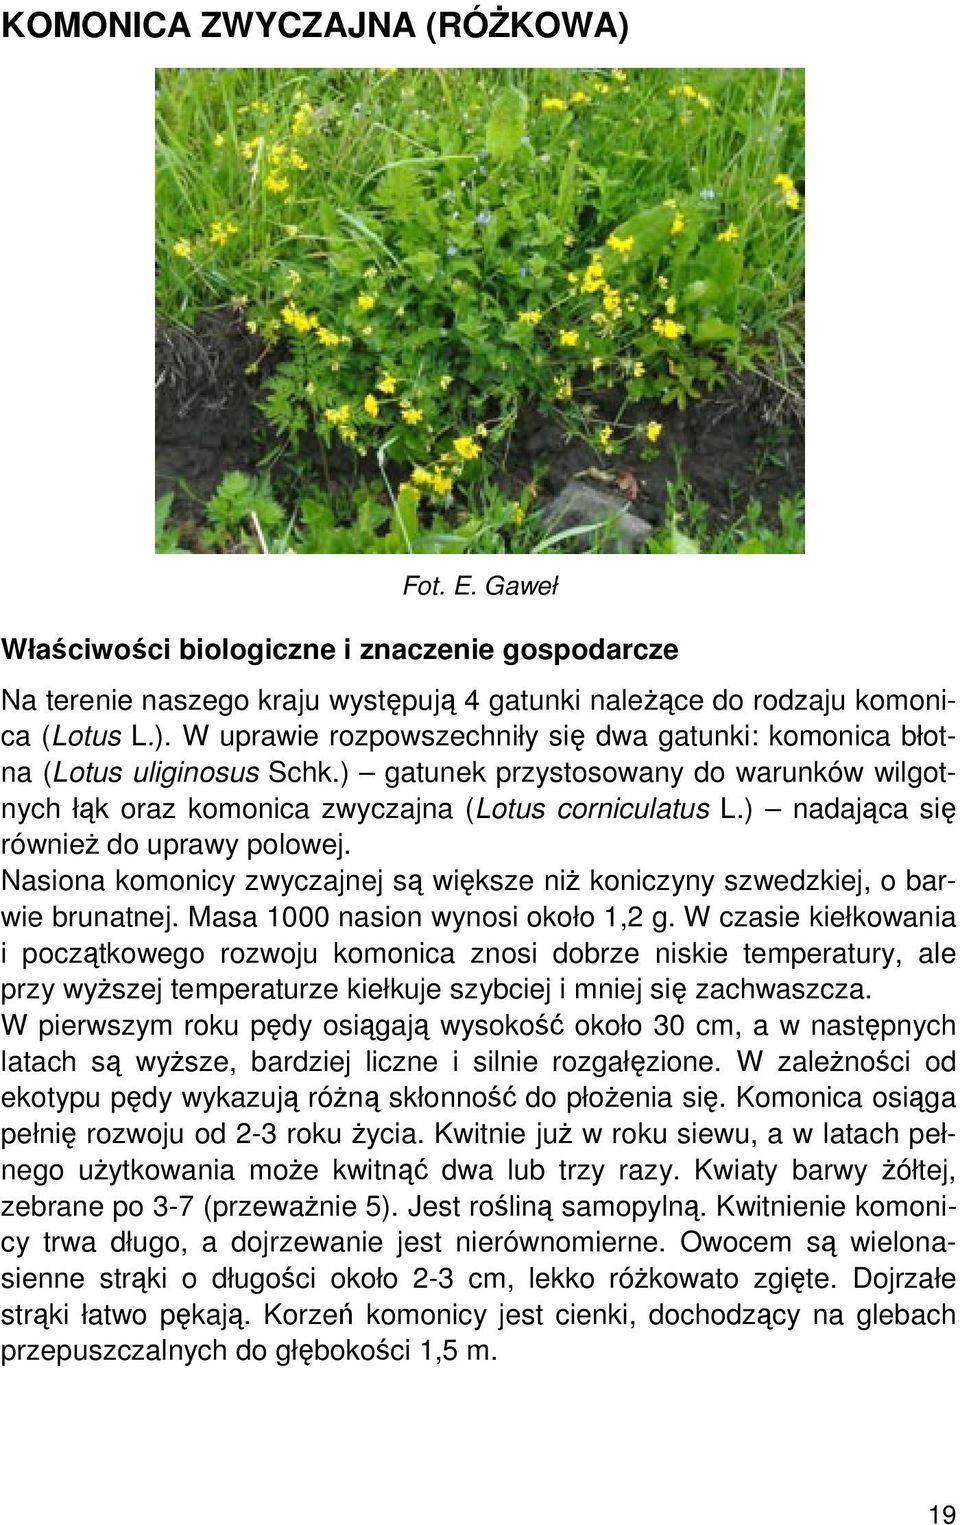 Nasiona komonicy zwyczajnej są większe niż koniczyny szwedzkiej, o barwie brunatnej. Masa 1000 nasion wynosi około 1,2 g.